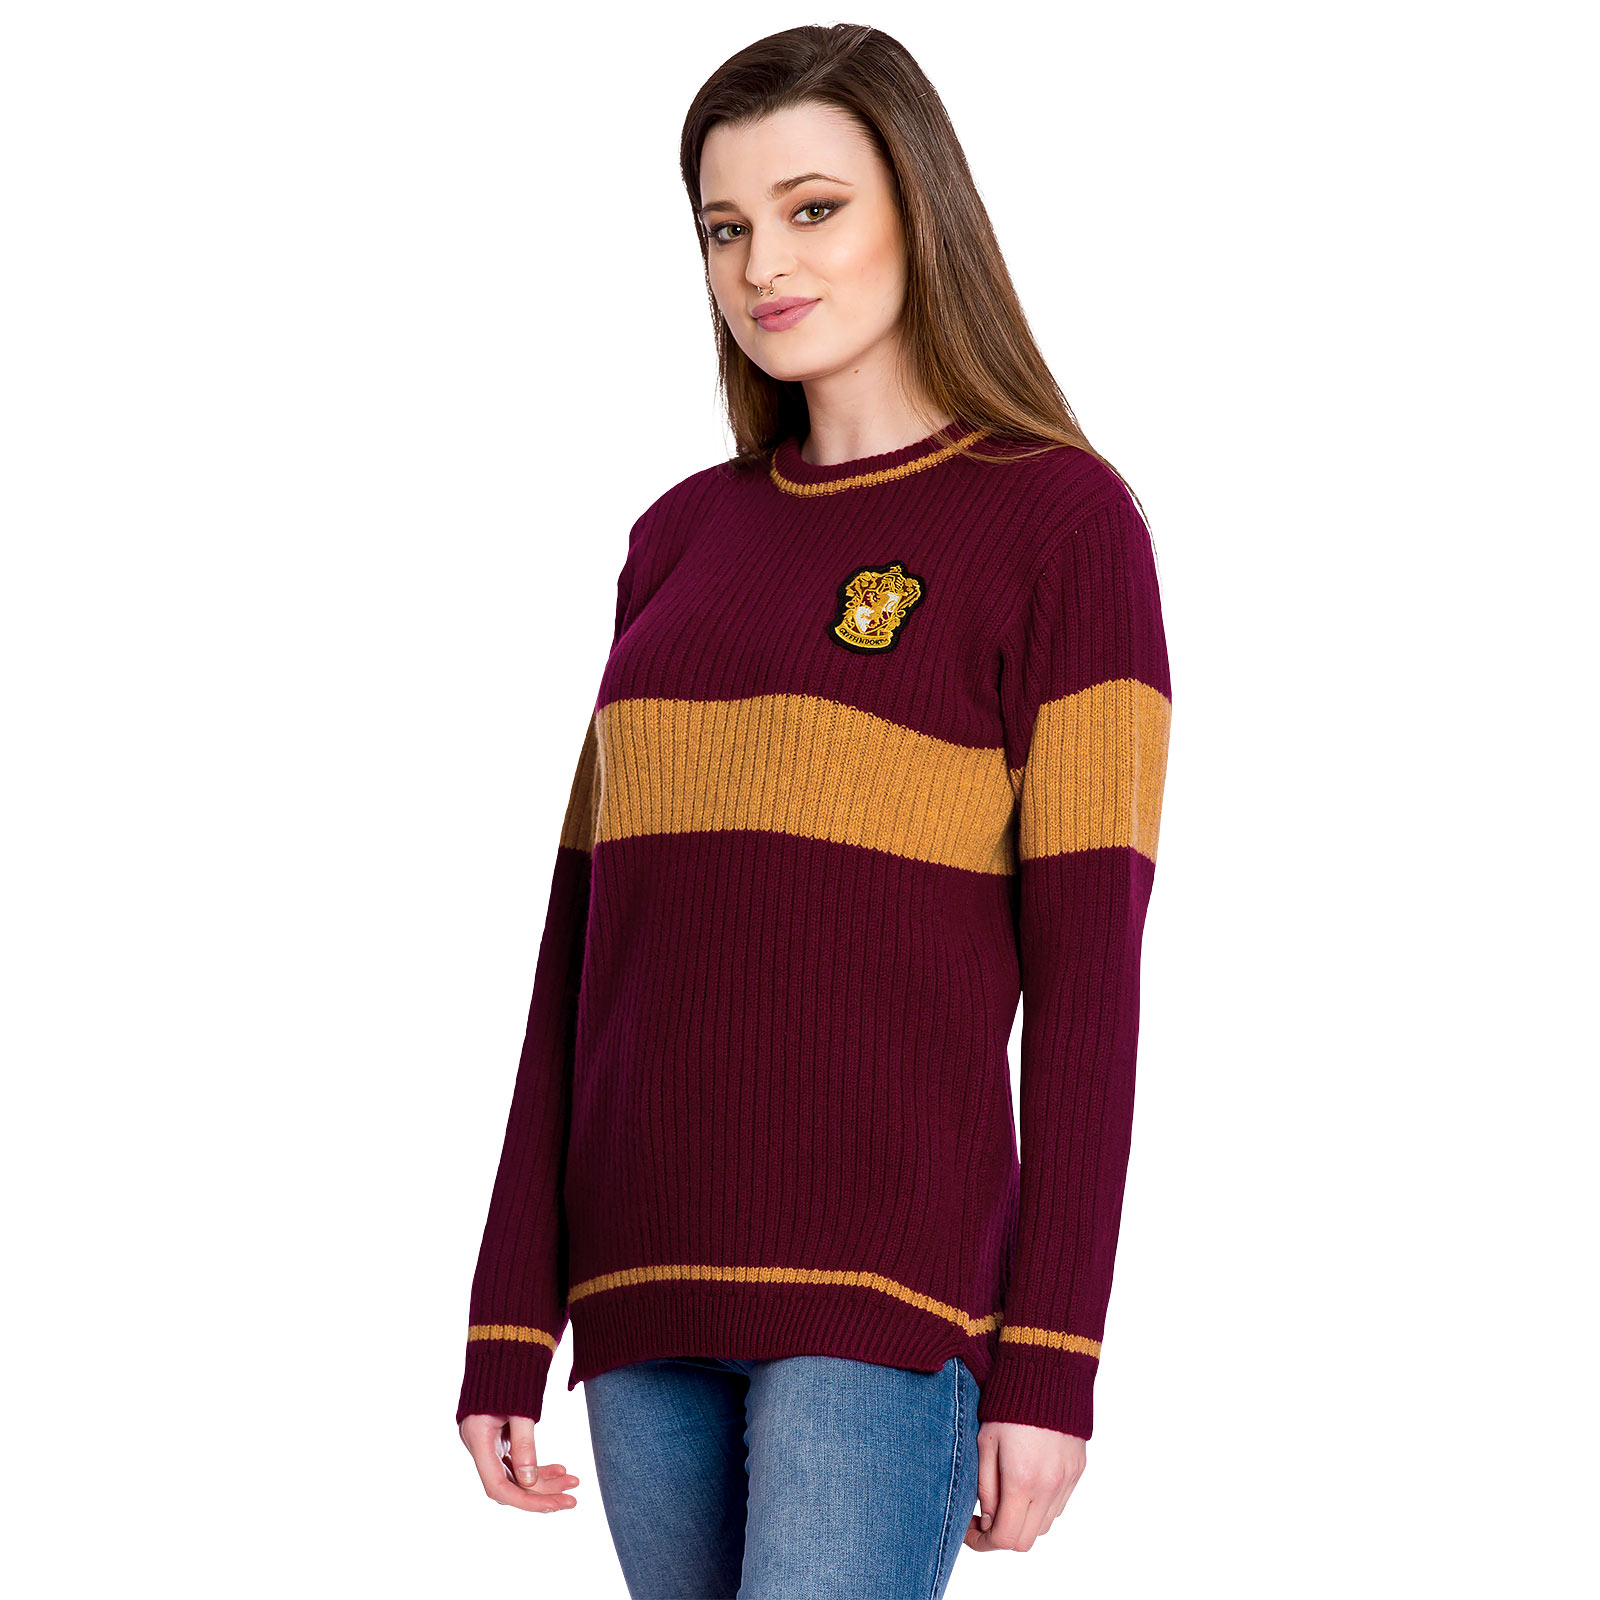 Harry Potter - Quidditch Gryffindor Sweater